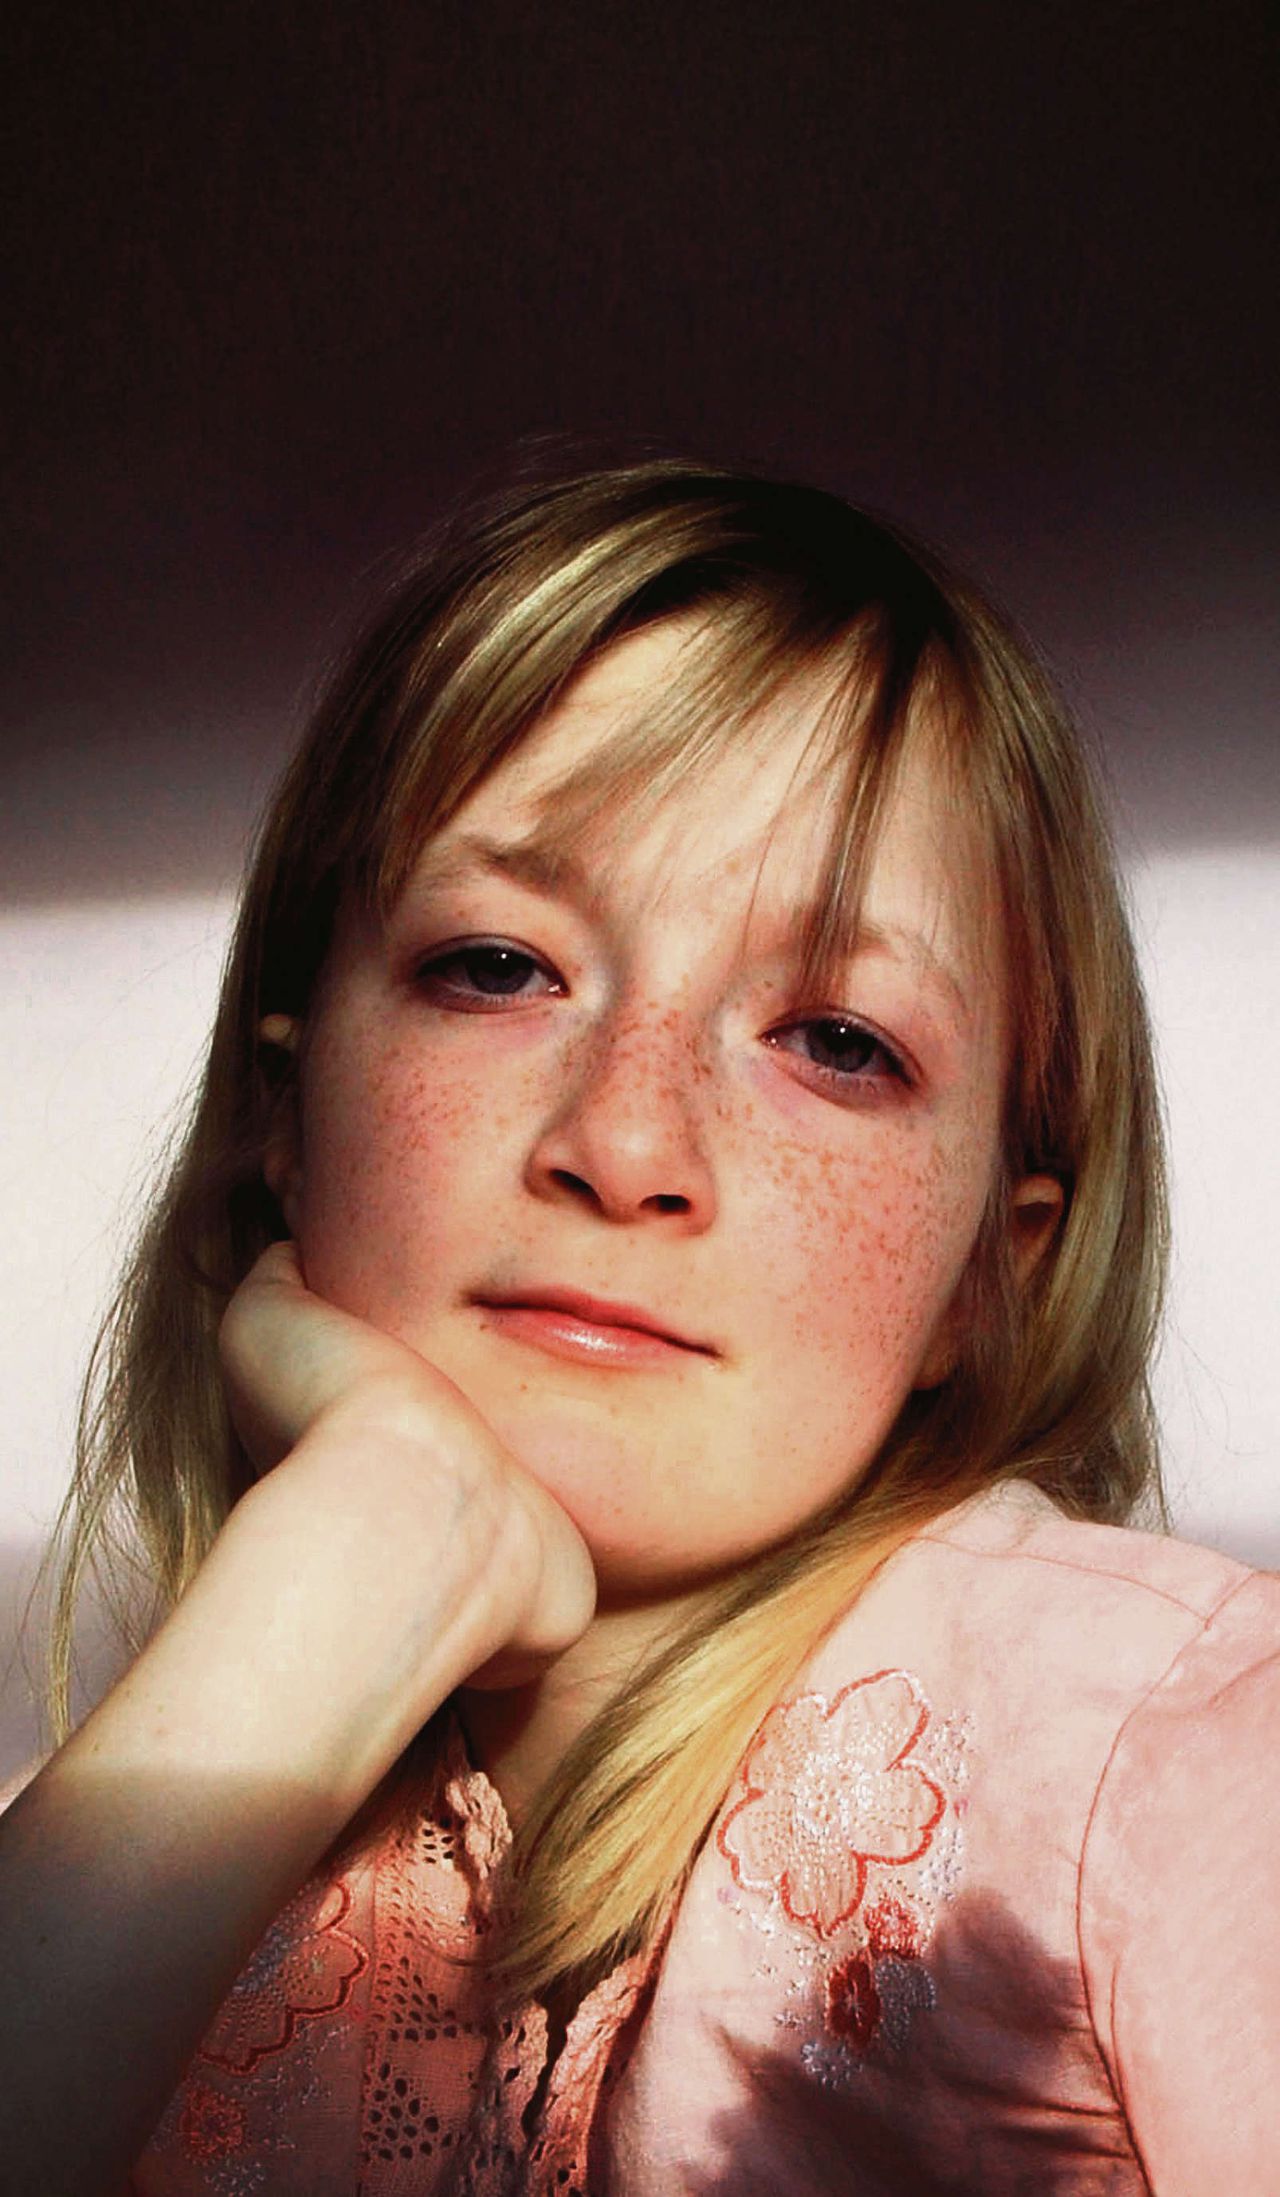 De Britse Hannah Jones weigerde in 2008 harttransplantatie te ondergaan, maar kwam daar in 2009 op terug en genas. Dat leidde tot disscussie over wilsbekwaamheid van kinderen, waarvoor het AMC nu een interviewmethode ontwikkelt.